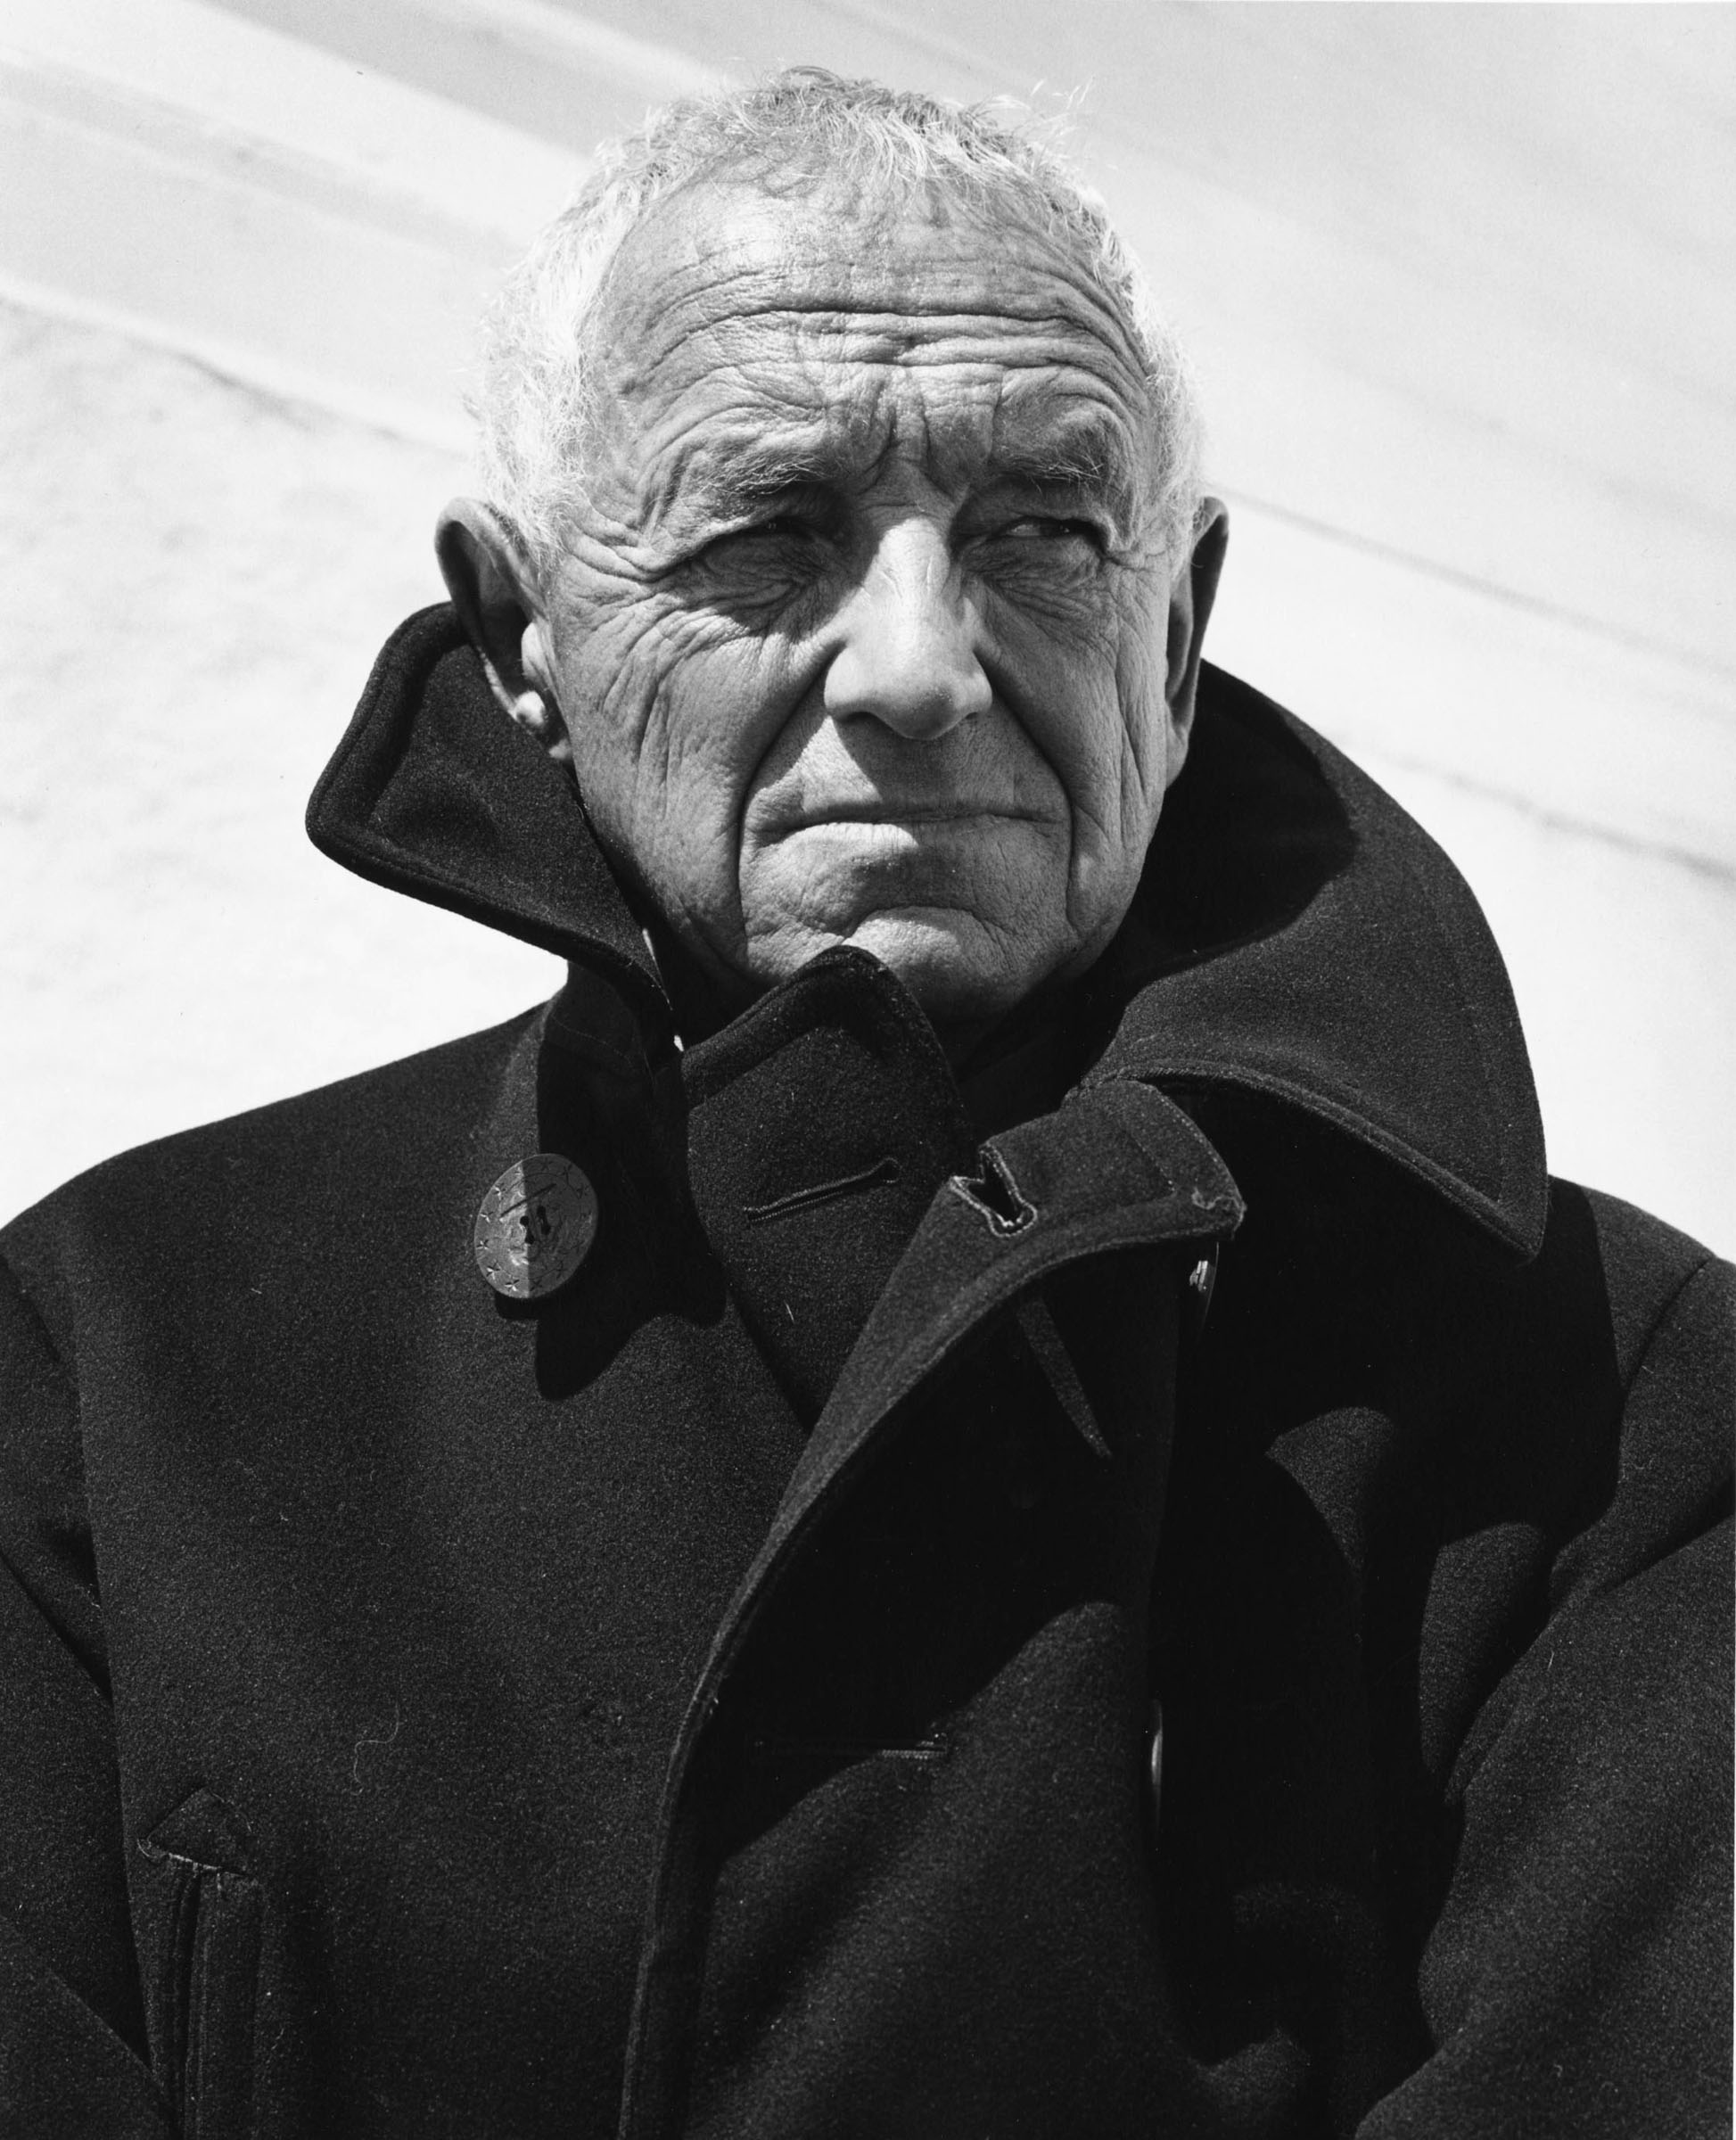 Andrew Wyeth - July 12, 1917 - January 16, 2009